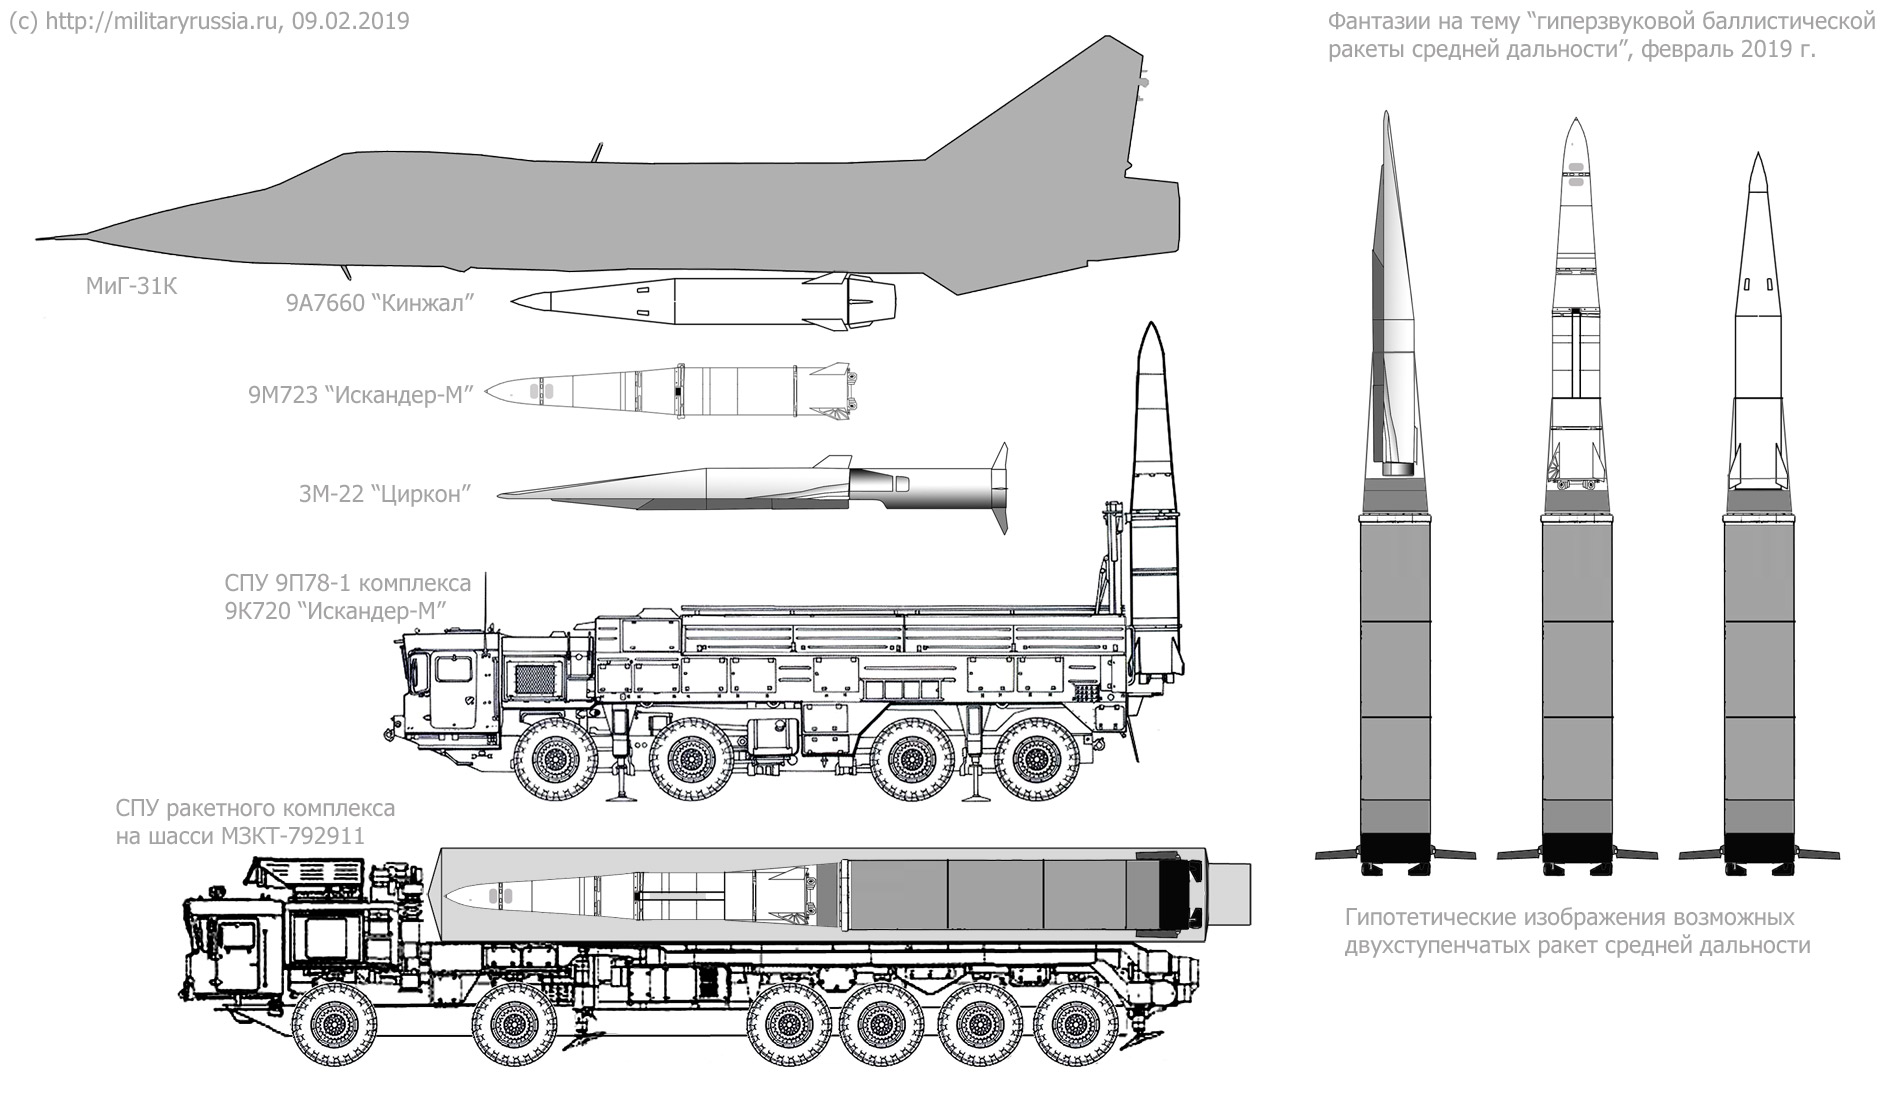 Ракета р-7 (8к71): «базовый» ракетоноситель для семейства советских ракет | звездный каталог